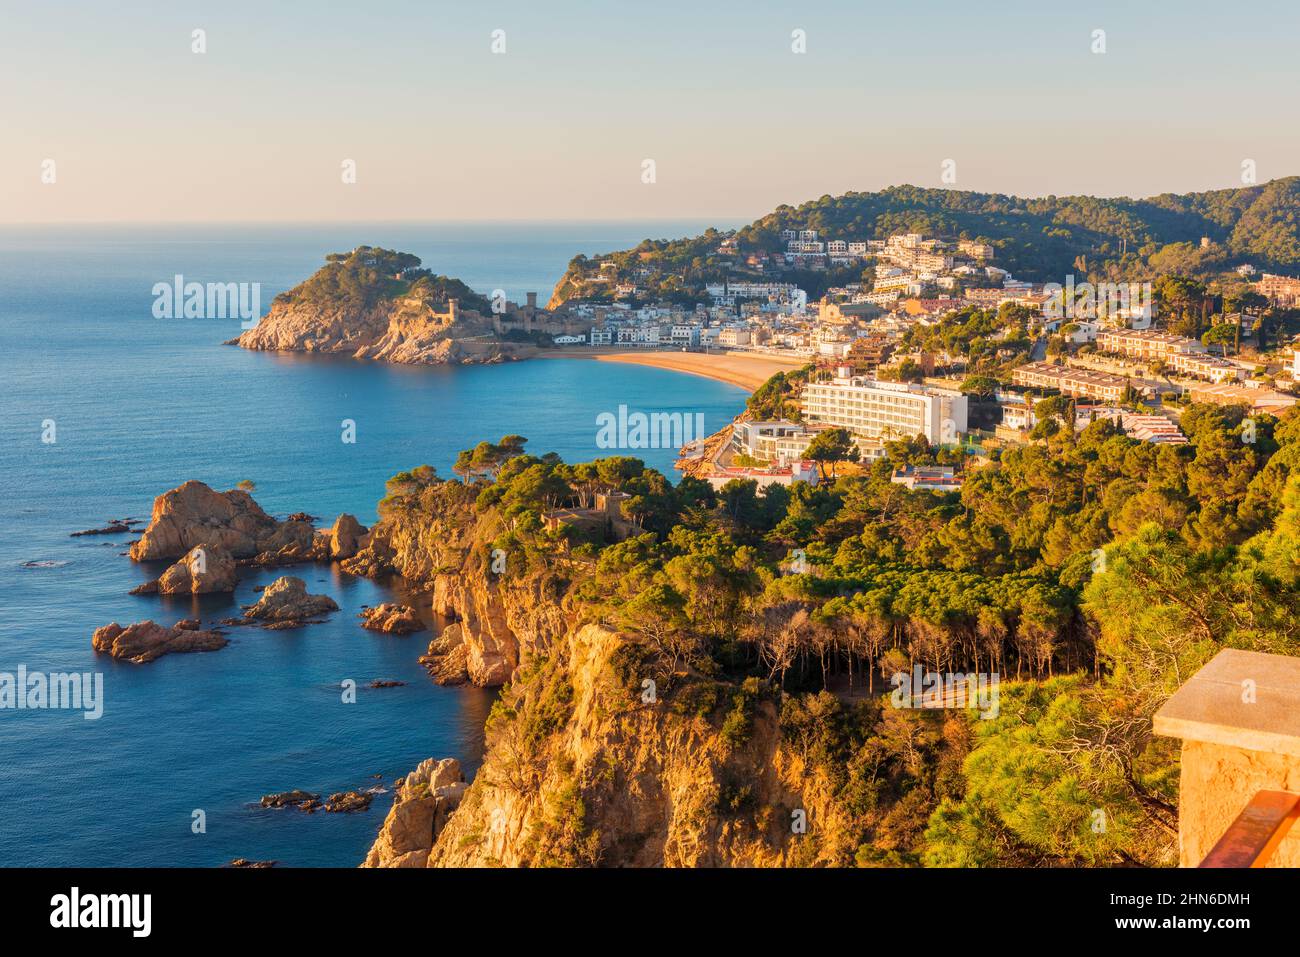 Vue à angle élevé sur la ville côtière de Tossa de Mar, province de Gerona, Catalogne, Espagne Banque D'Images